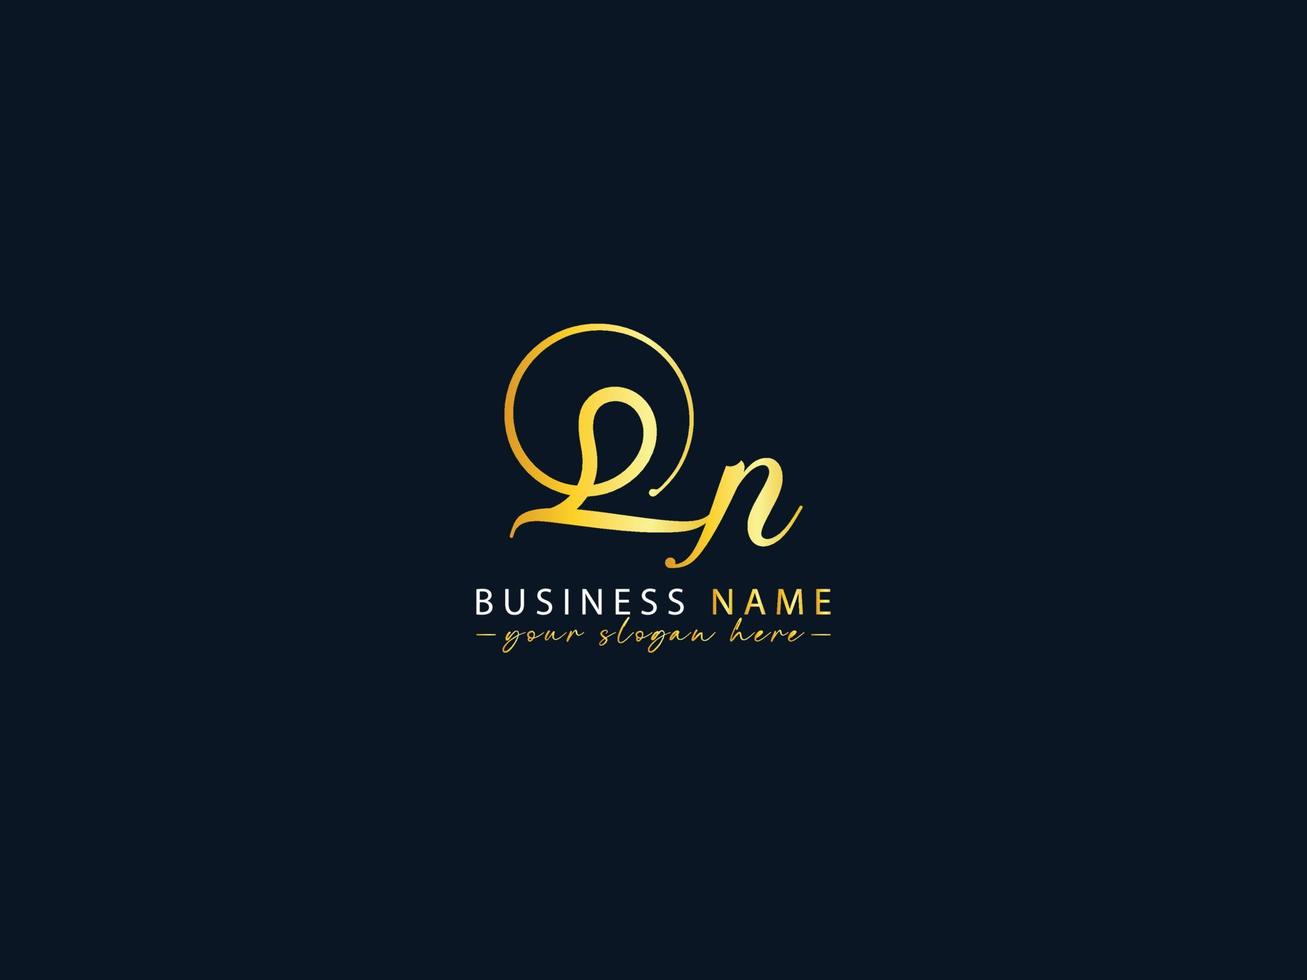 carta de logotipo qn de luxo, vetor de logotipo de carta qn de caligrafia